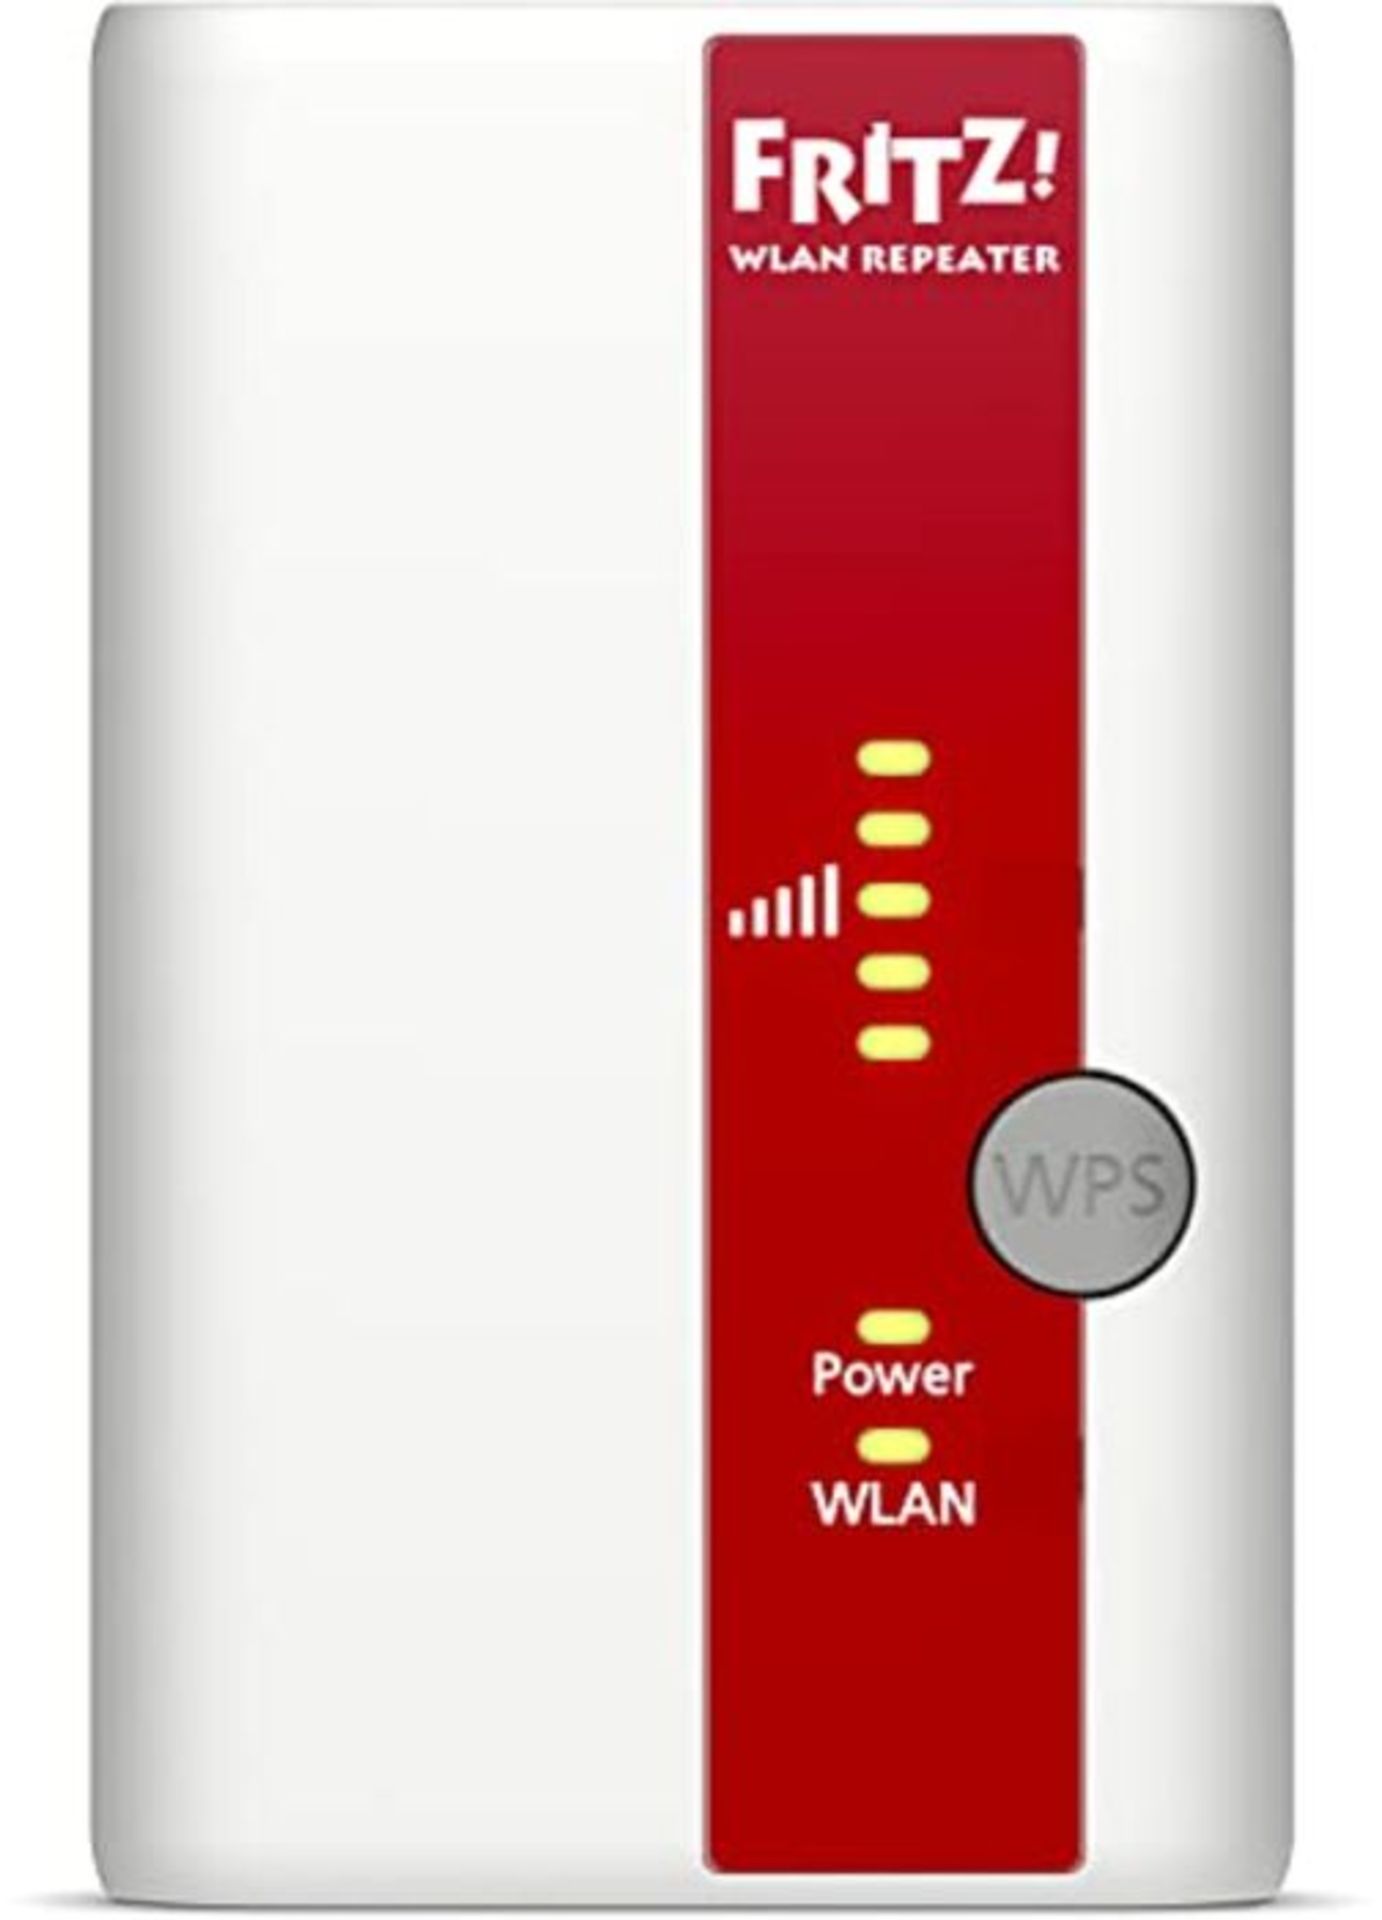 AVM FRITZ!WLAN Repeater 310 (300 Mbit/s, WPS), weiß, deutschsprachige Version